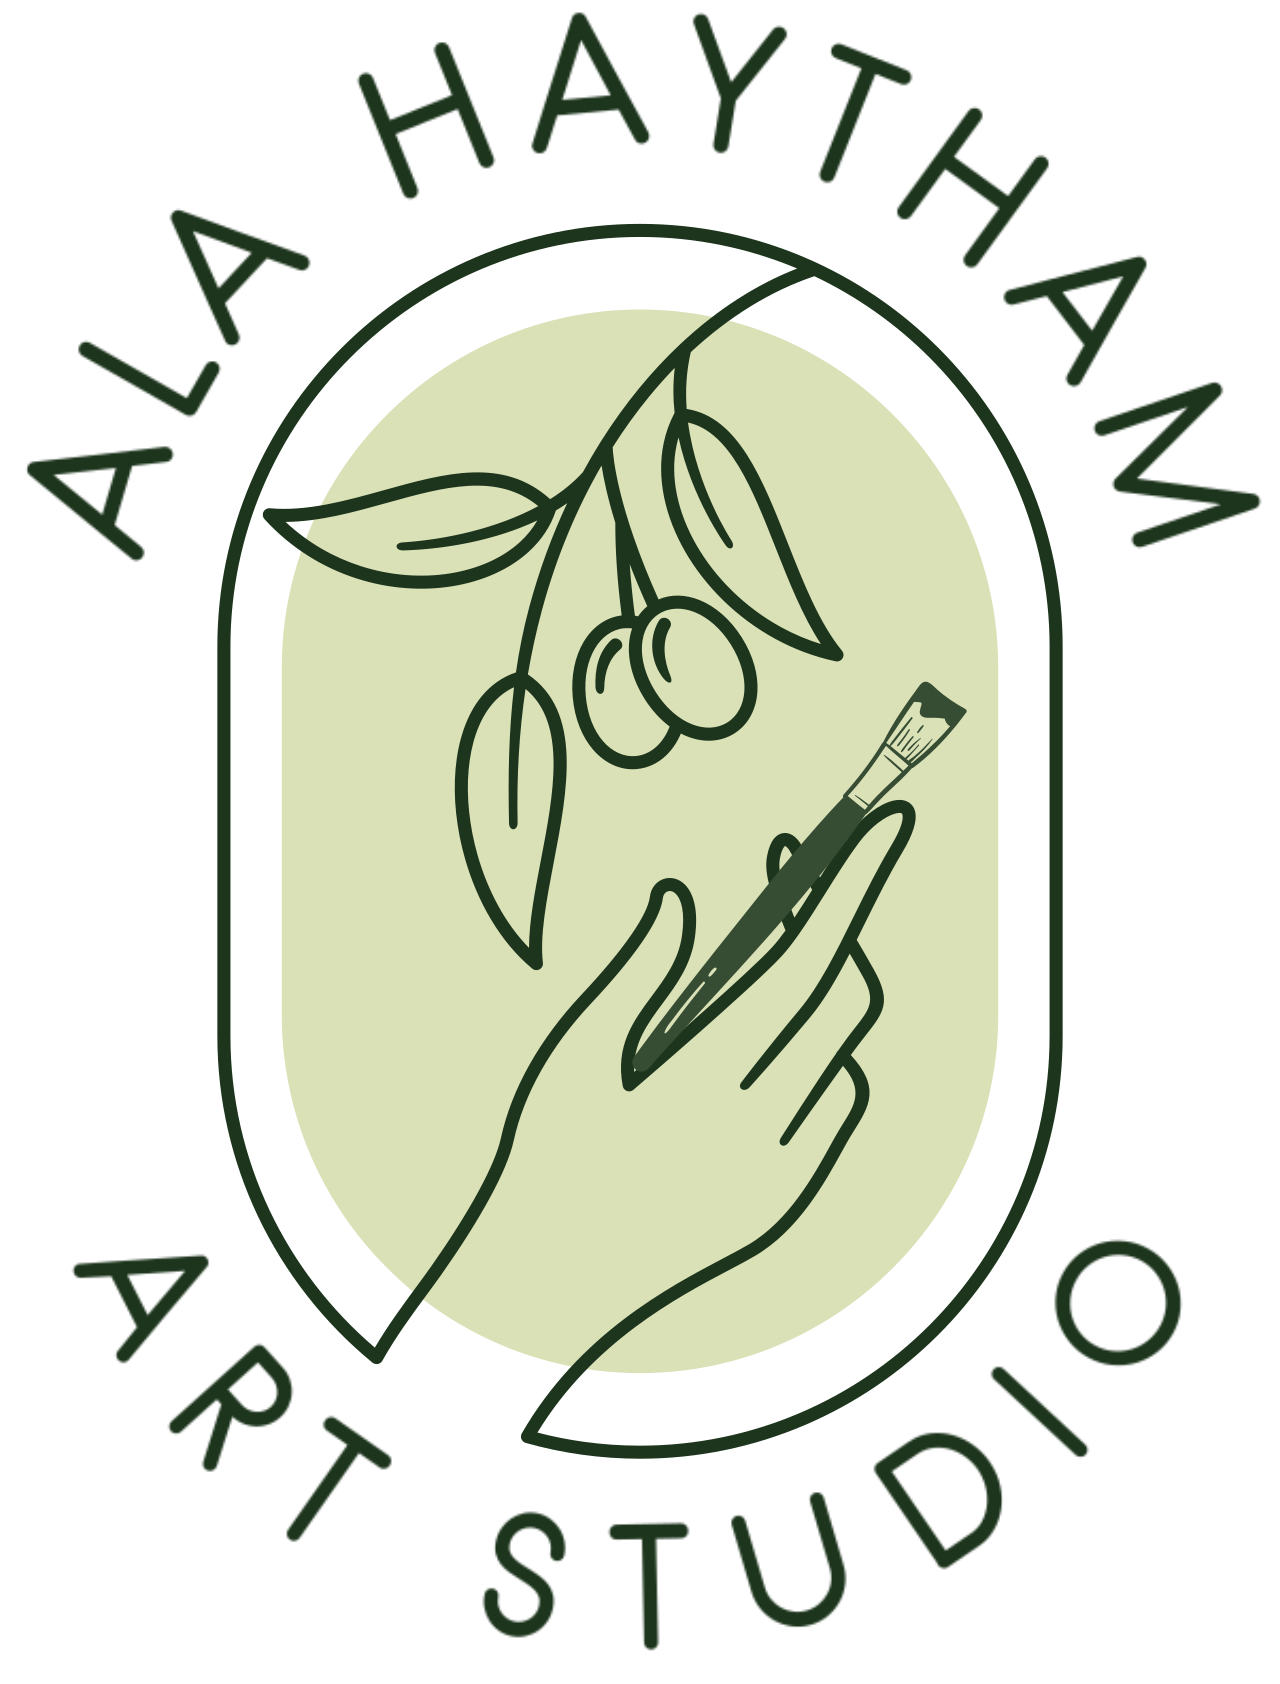 ALA HAYTHAM's logo